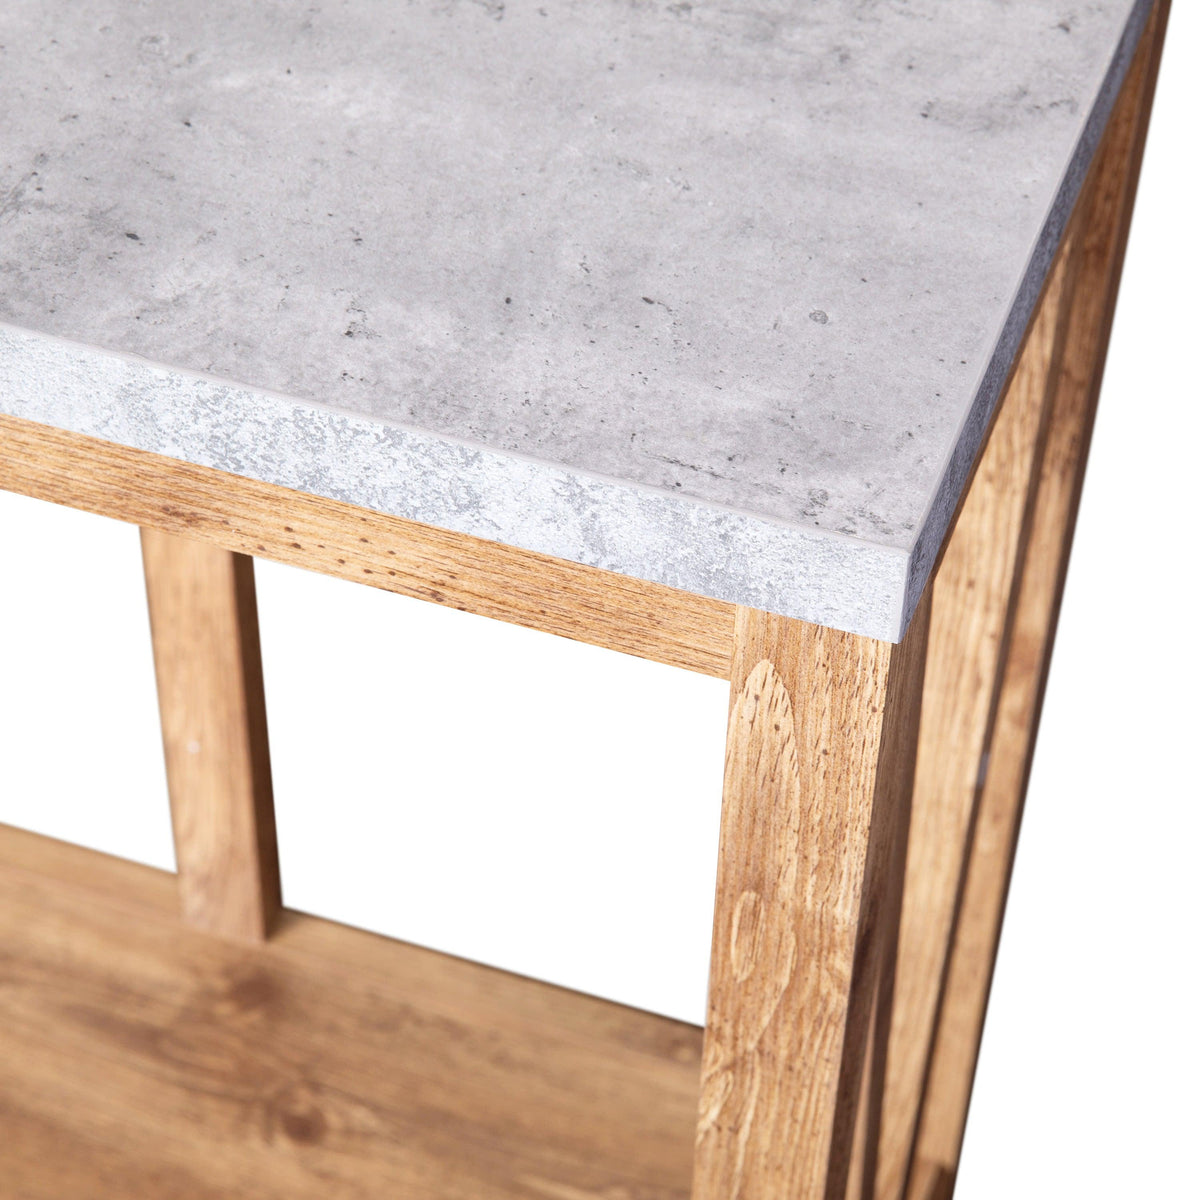 Concrete Top/Warm Oak Frame |#| Farmhouse Style Rustic Entryway Console Table - Warm Oak/Concrete Finish Top